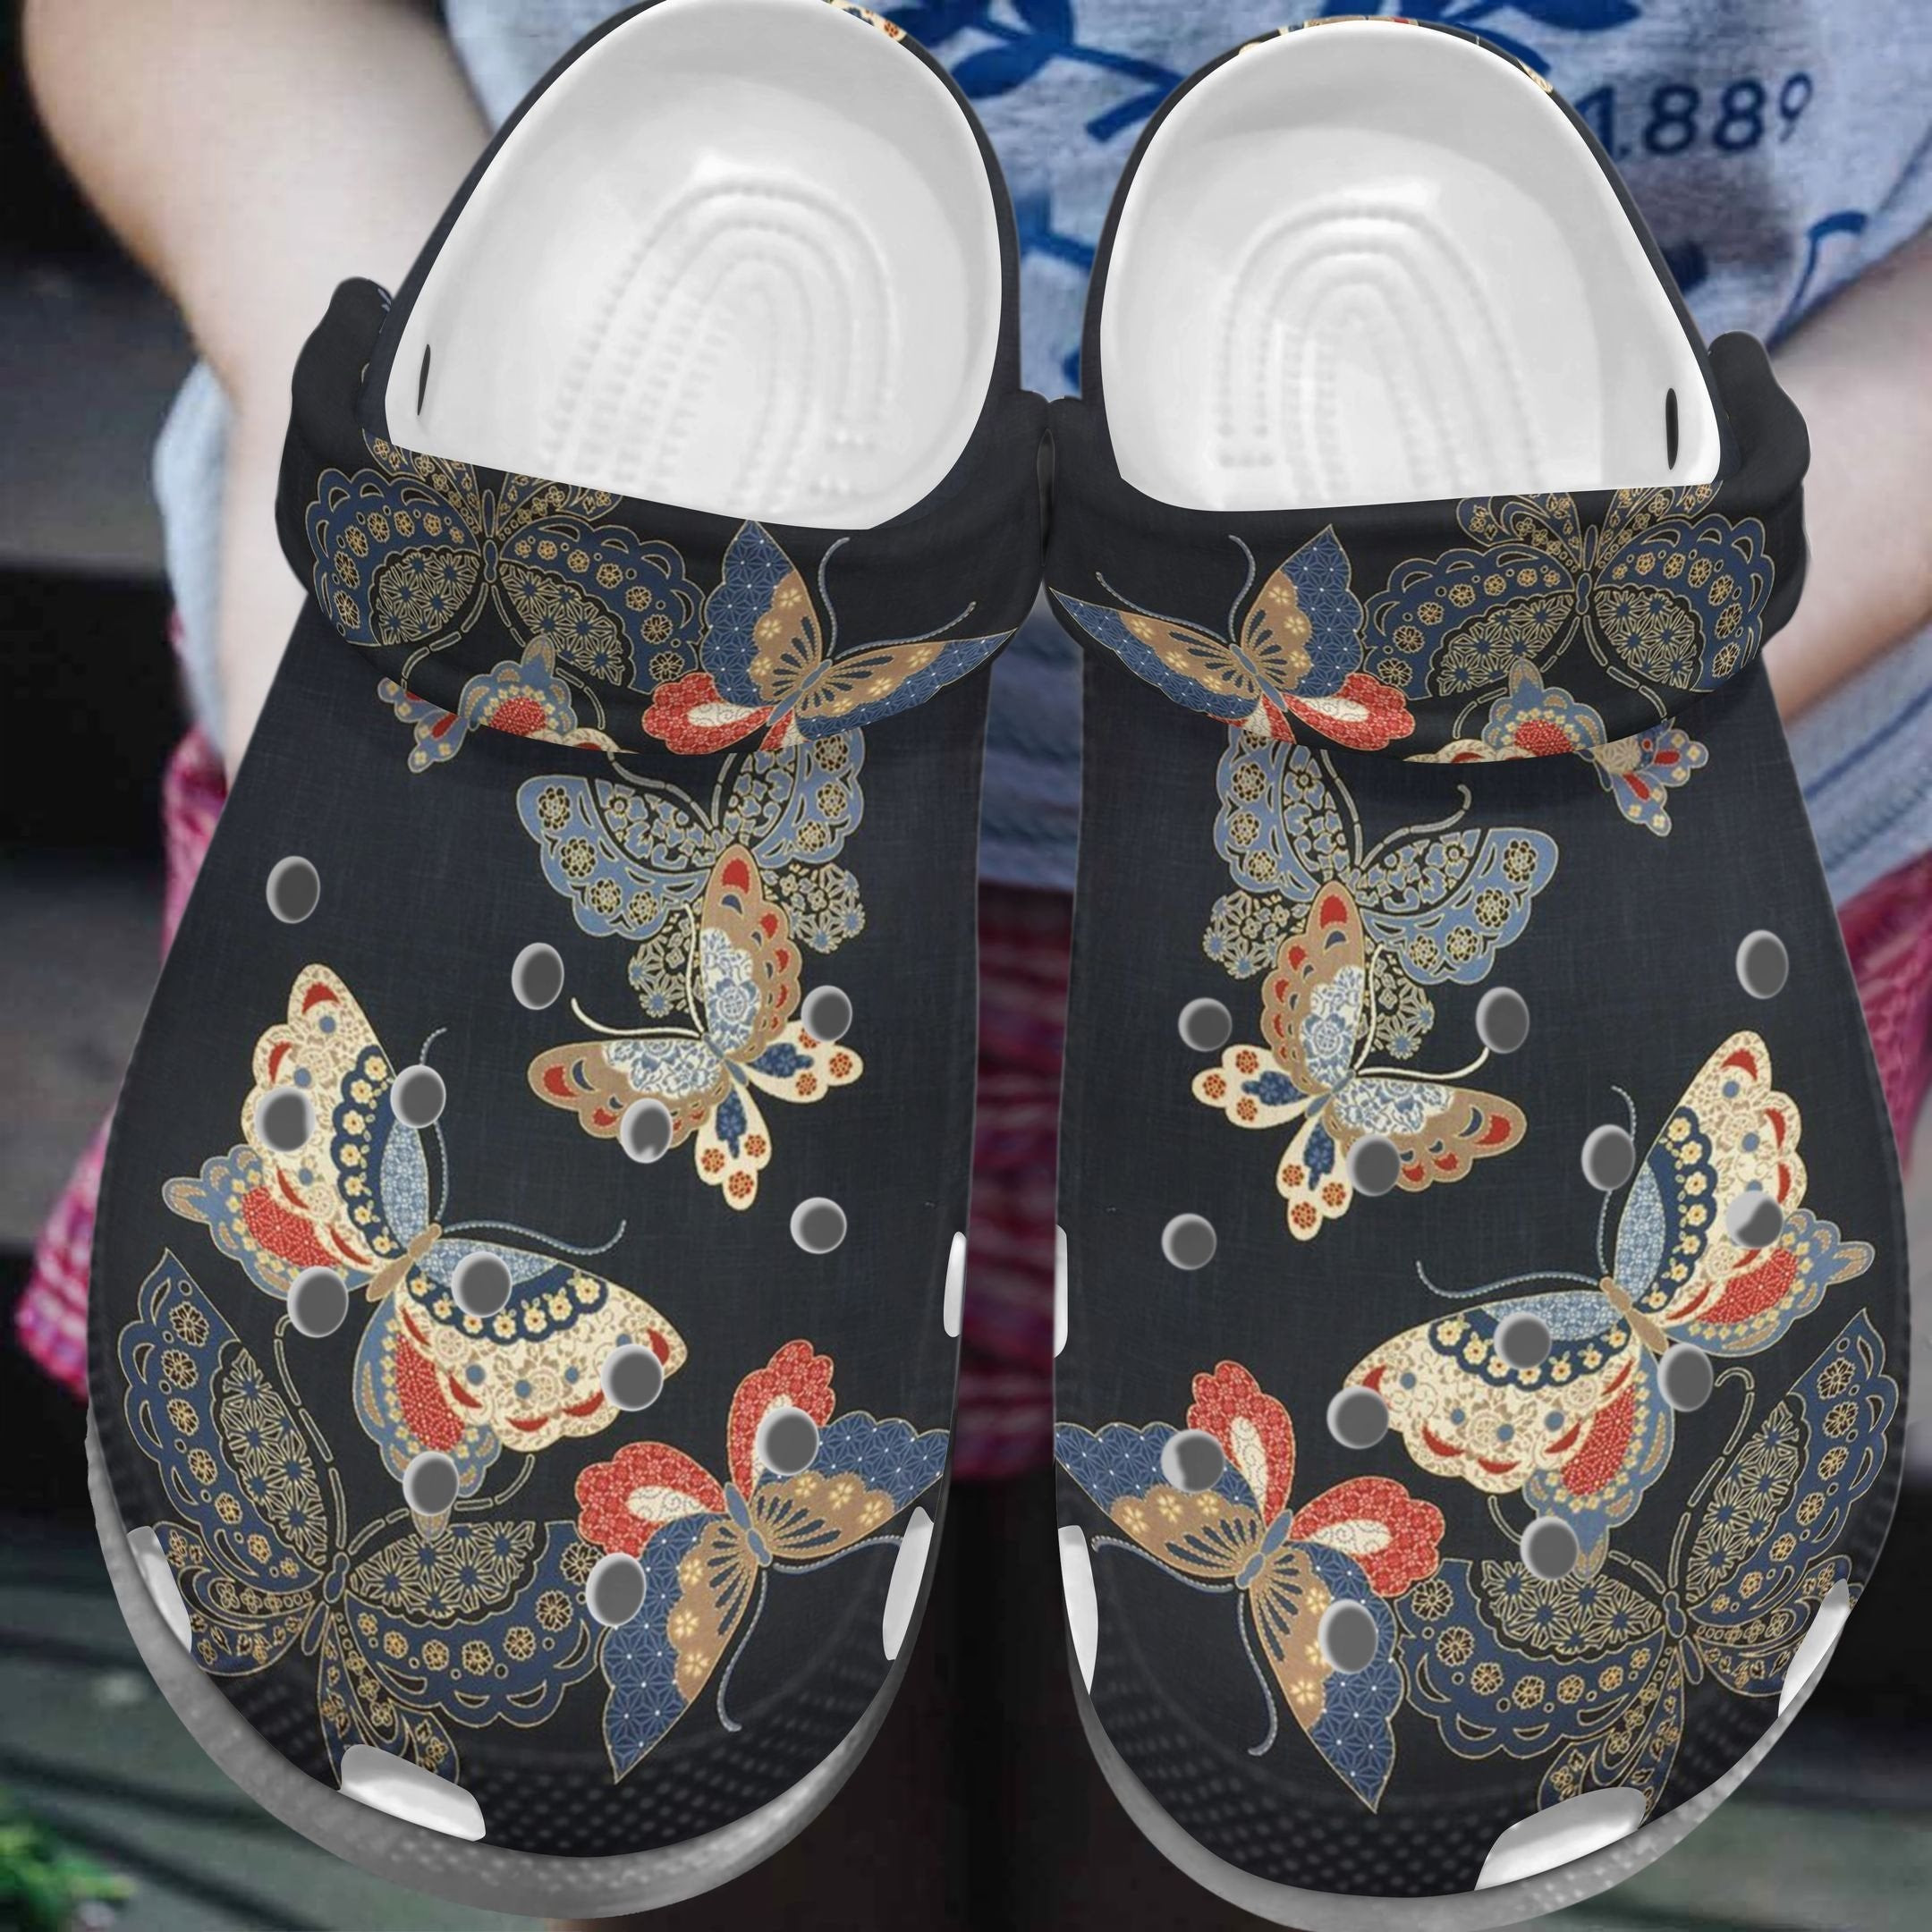 Art Butterfly Custom Crocs Shoes Clogs For Men Women - Black Crocs Shoes Clogs